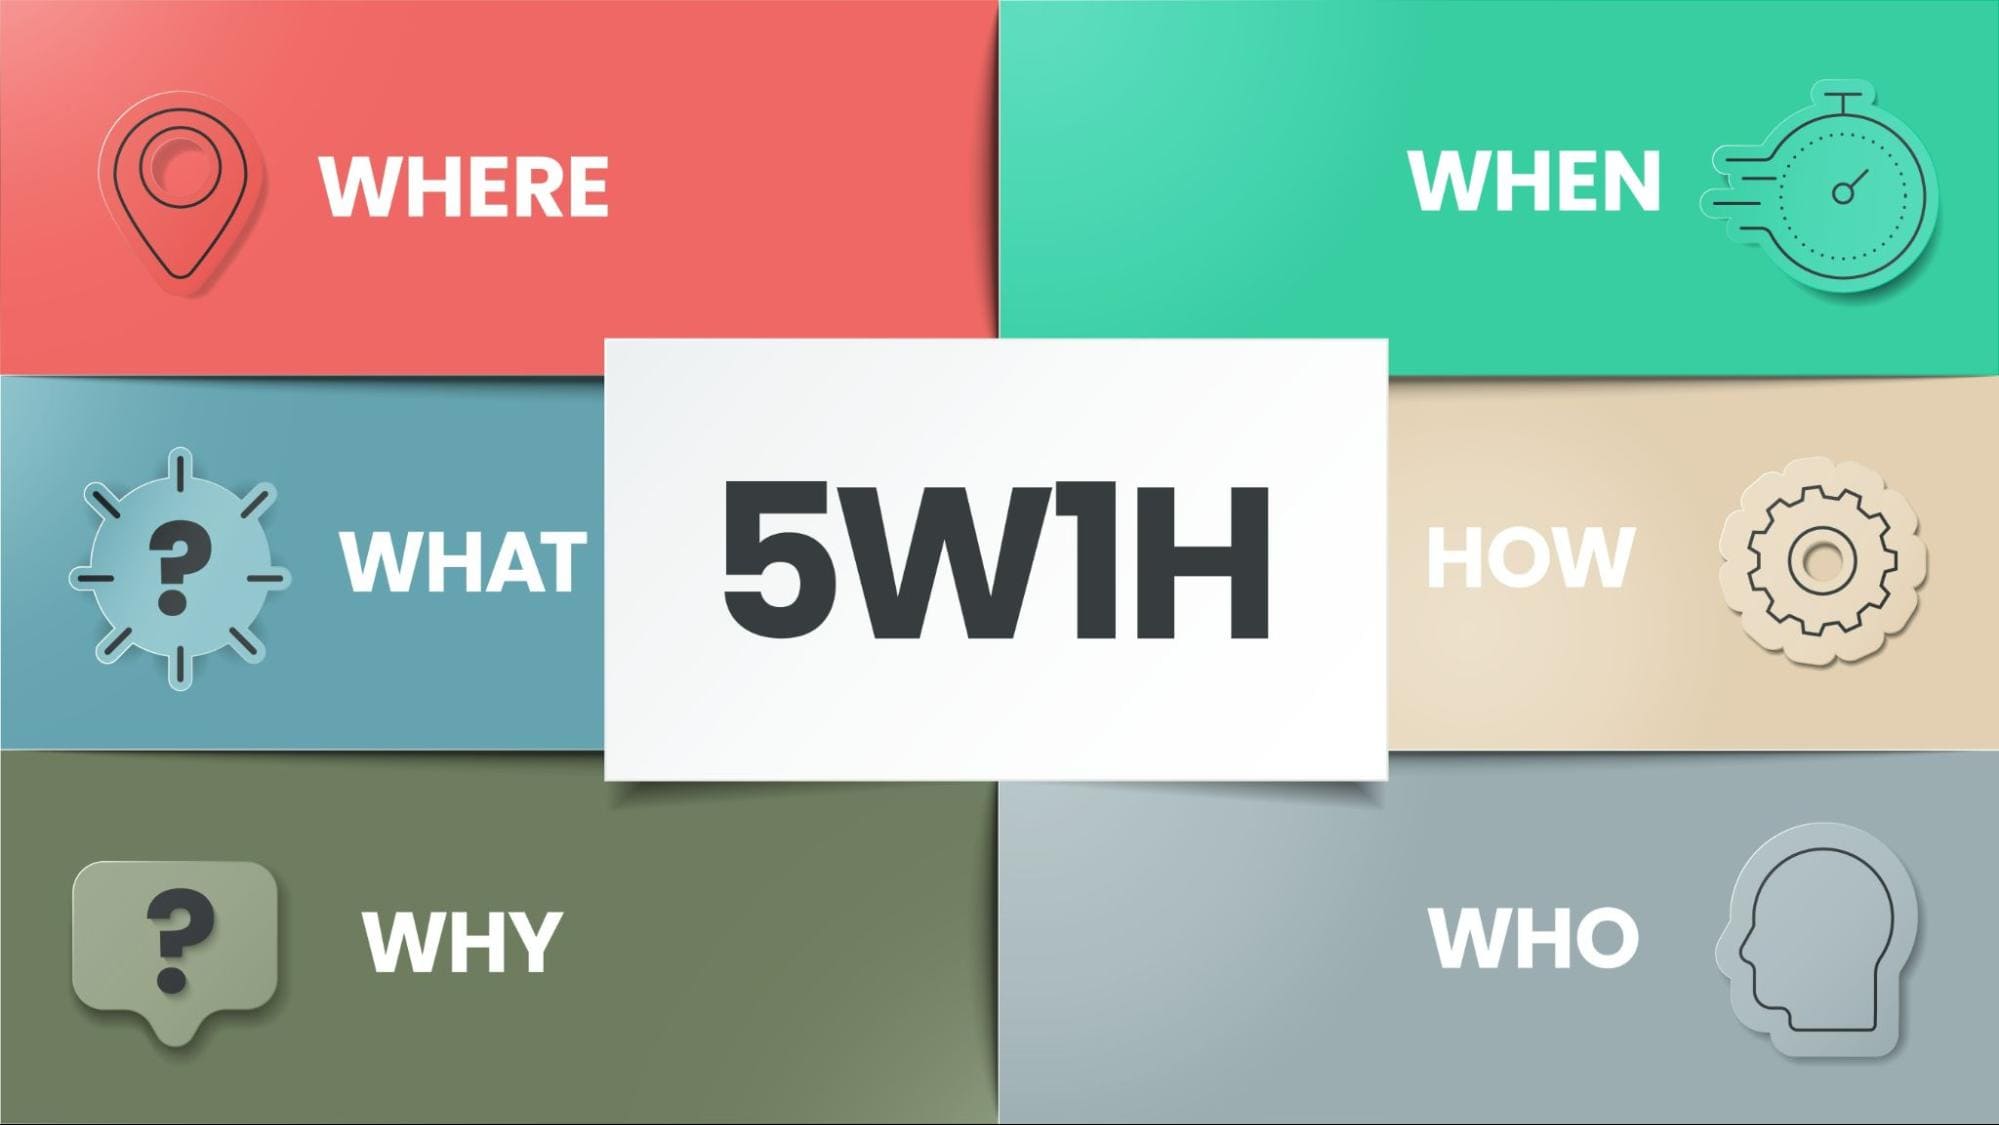 5W1H là gì? Giải thích ý nghĩa và ứng dụng của phương pháp 5W1H trong nhiều lĩnh vực